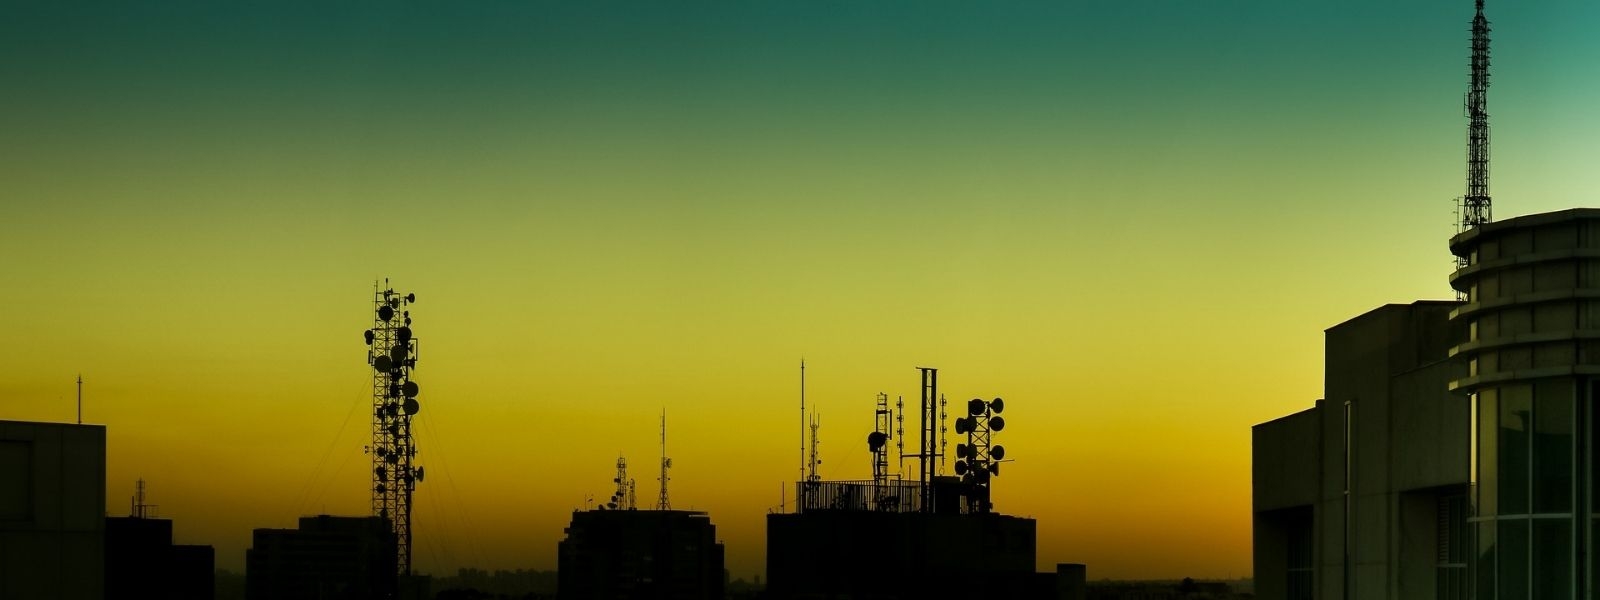 Radioenlaces | Ingeniería de Comunicaciones | Servicios | Telenor Comunicaciones